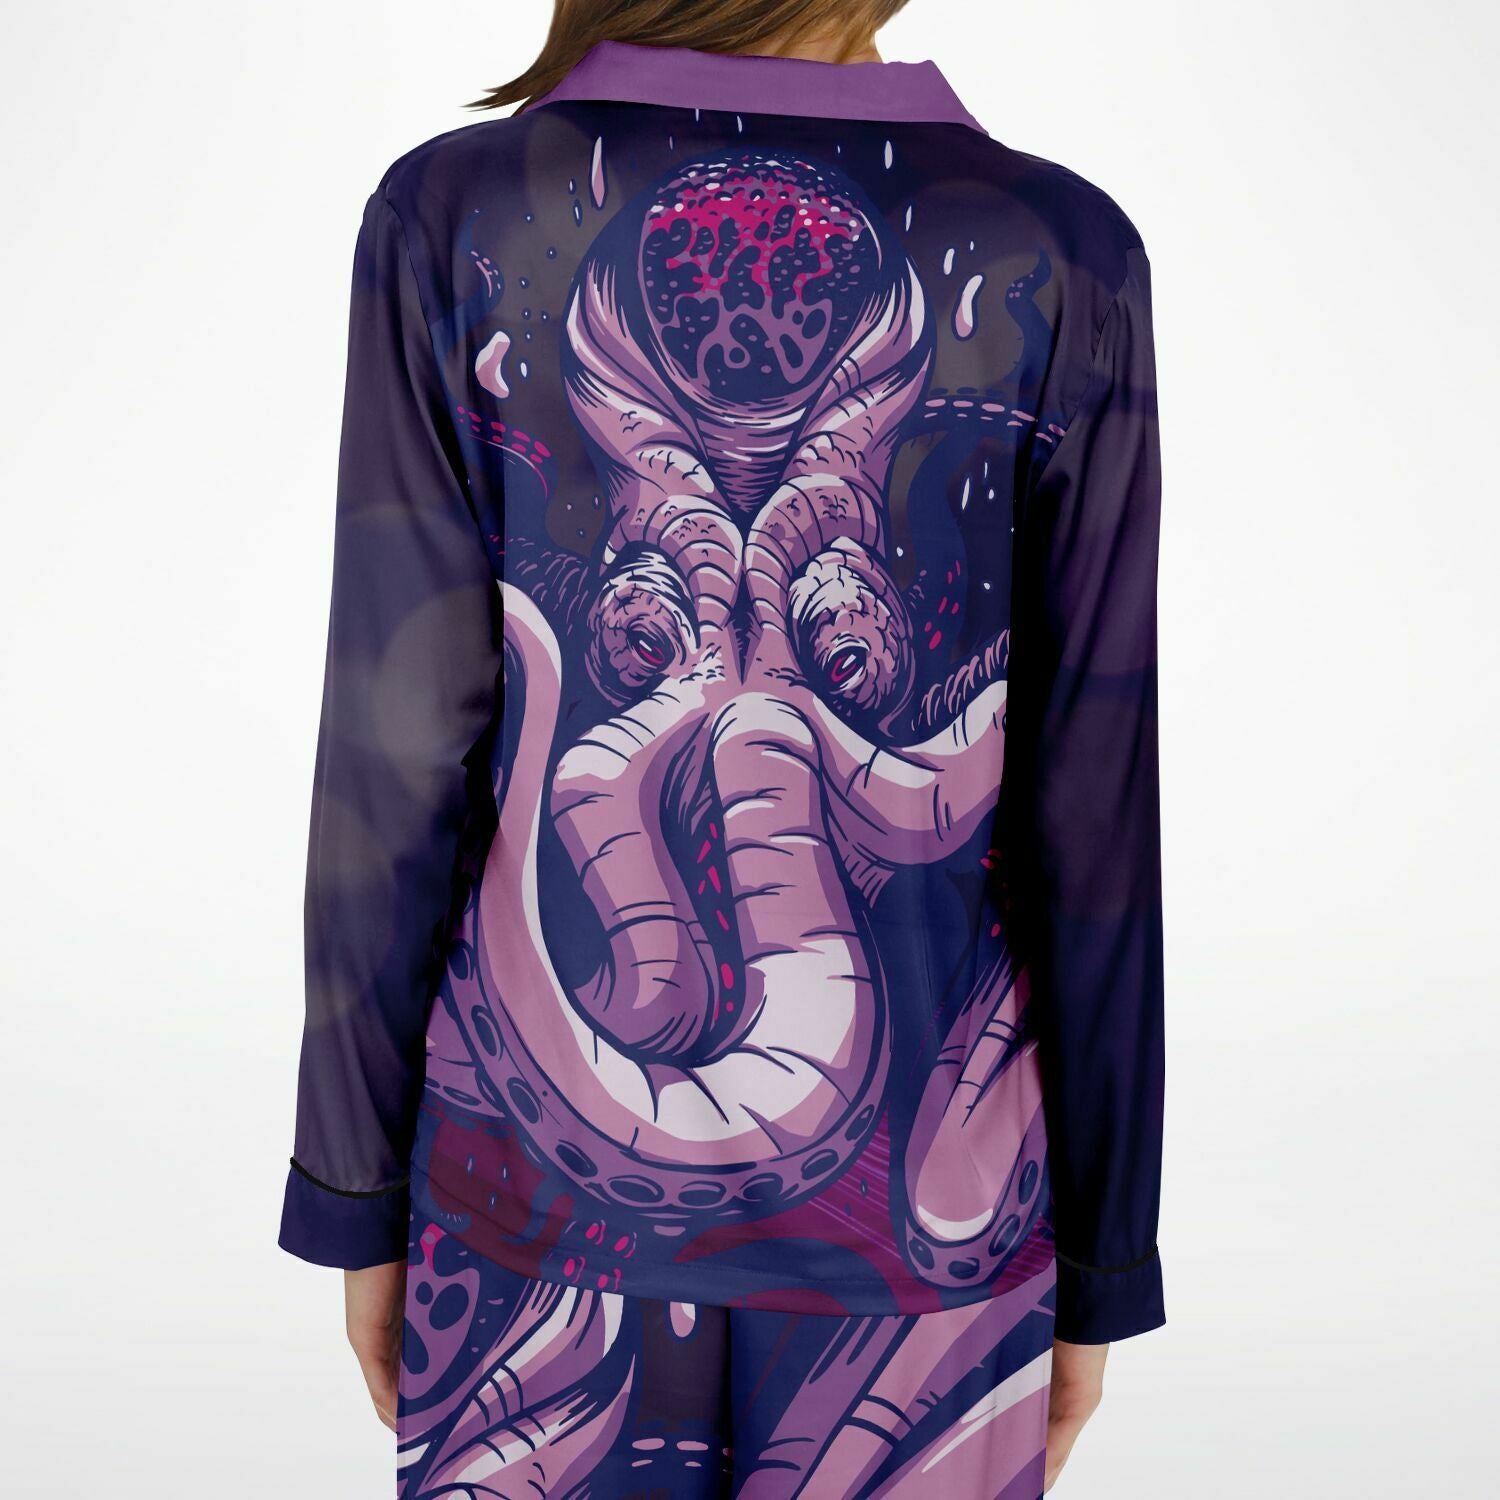 Psychic Kraken Women's Satin Pajamas Set